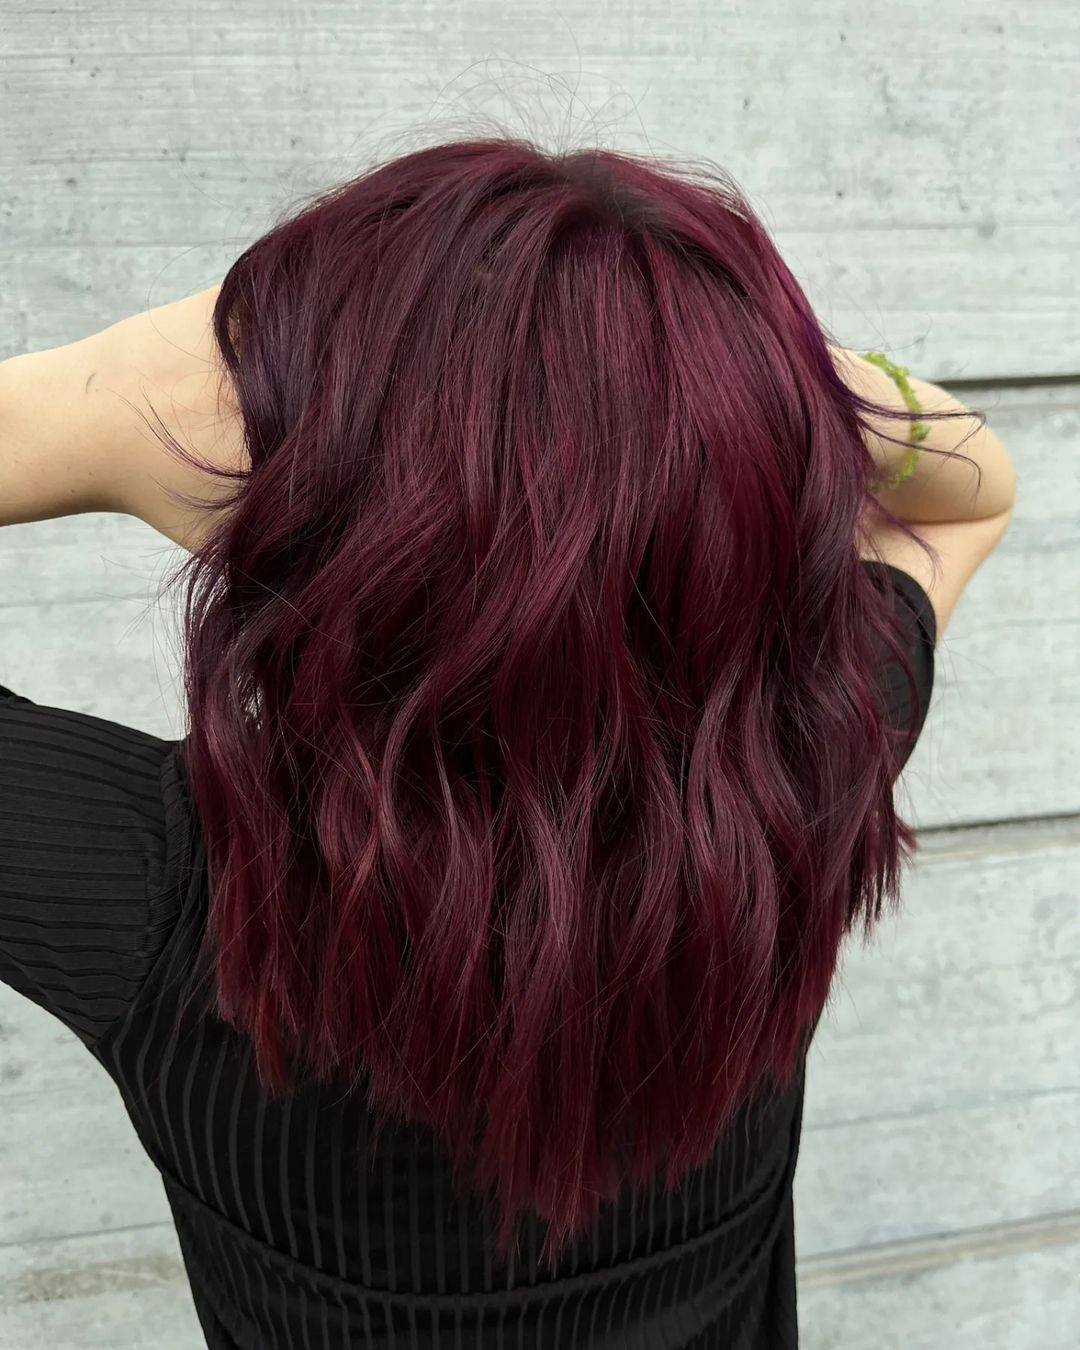 Burgundy hair color 416 burgundy hair color | burgundy hair color for women | burgundy hair color highlights Burgundy Hair Color